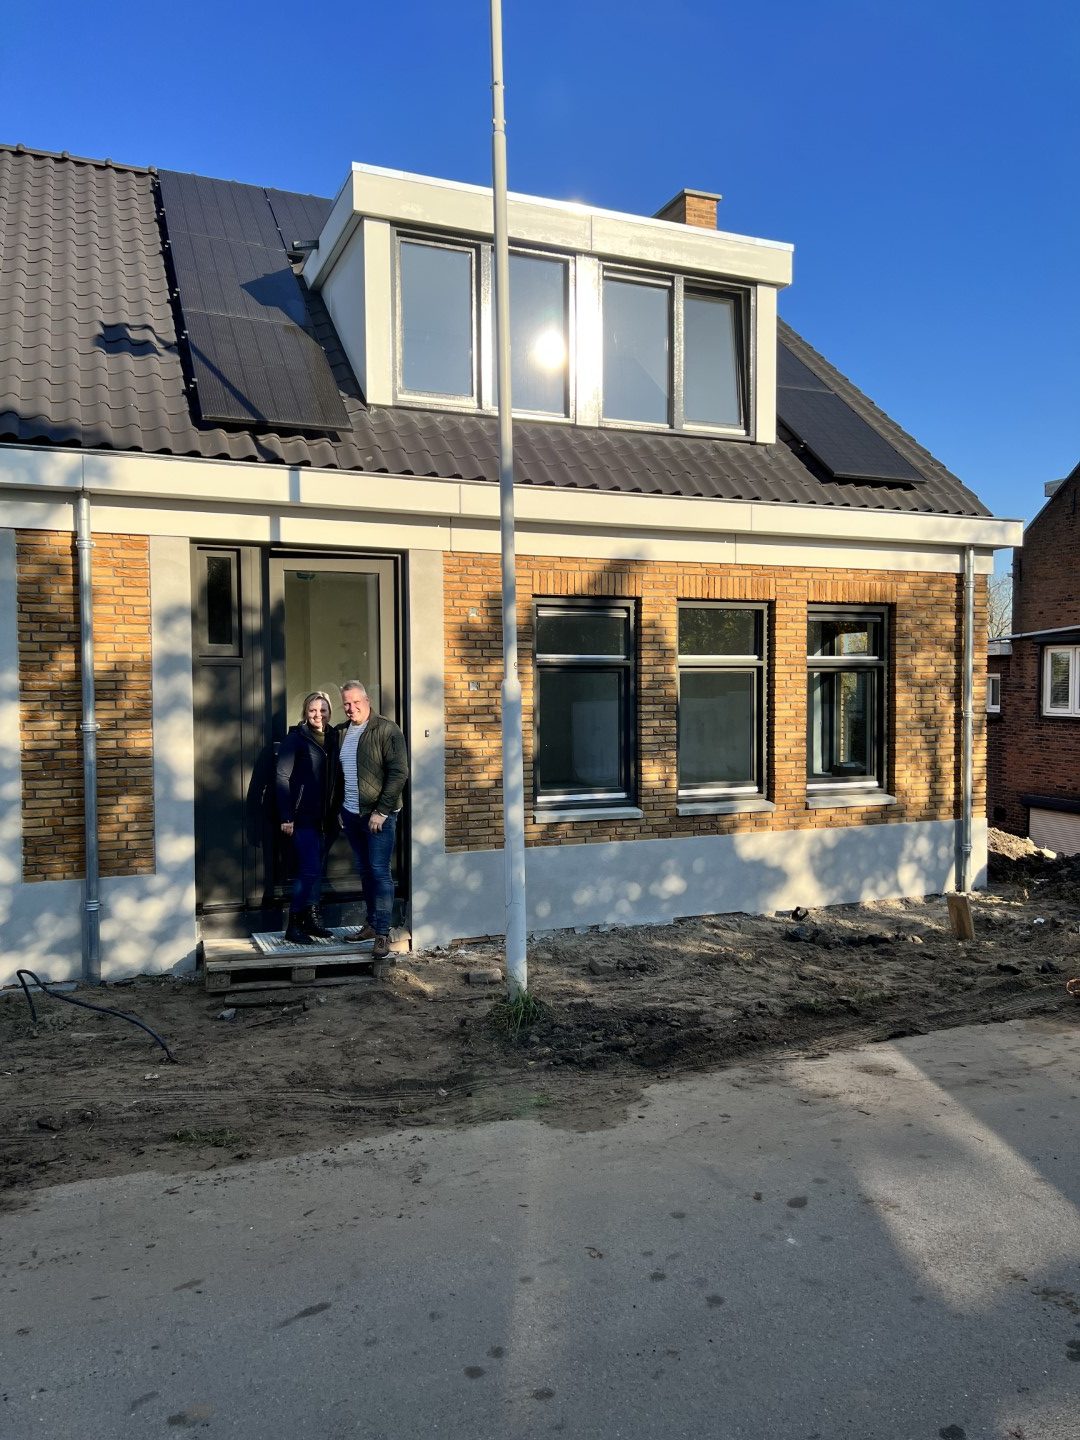 8 woningen project 'De Kooyker' in Papendrecht voltooid! 6